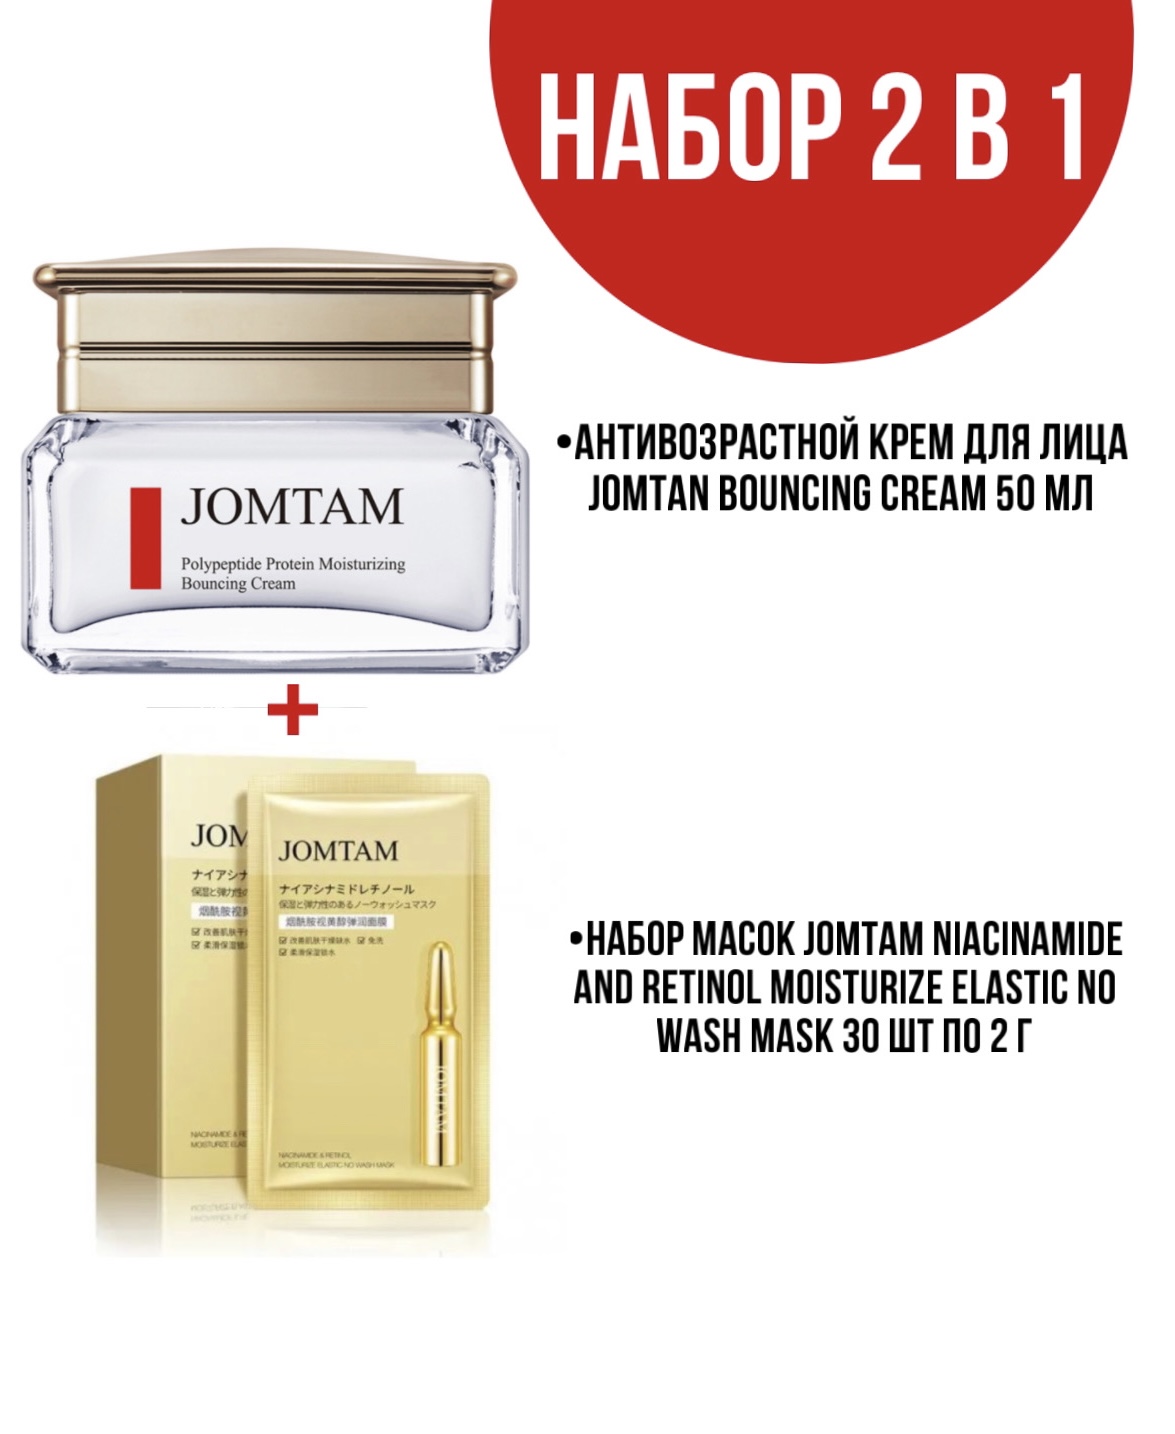 Крем Jomtam Bouncing Cream для лица 50 мл и набор масок Jomtam Niacinamide 30 шт по 2 г миры крестоманси девять жизней кристофера чанта